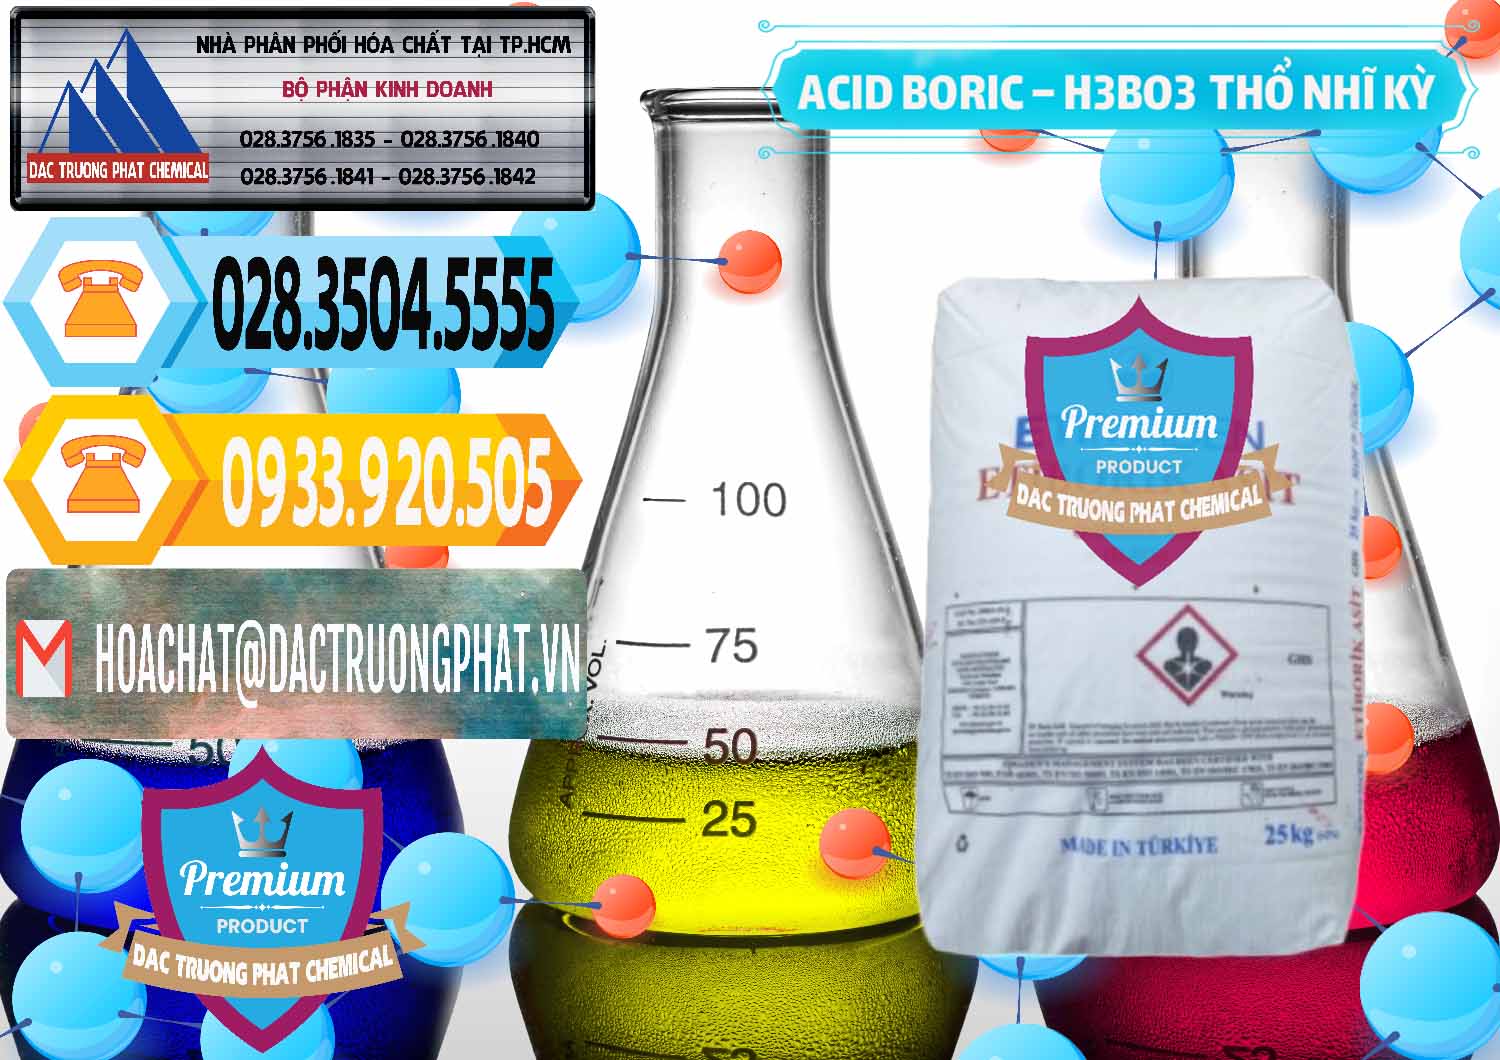 Phân phối - bán Acid Boric – Axit Boric H3BO3 Etimaden Thổ Nhĩ Kỳ Turkey - 0369 - Nhà phân phối - bán hóa chất tại TP.HCM - hoachattayrua.net